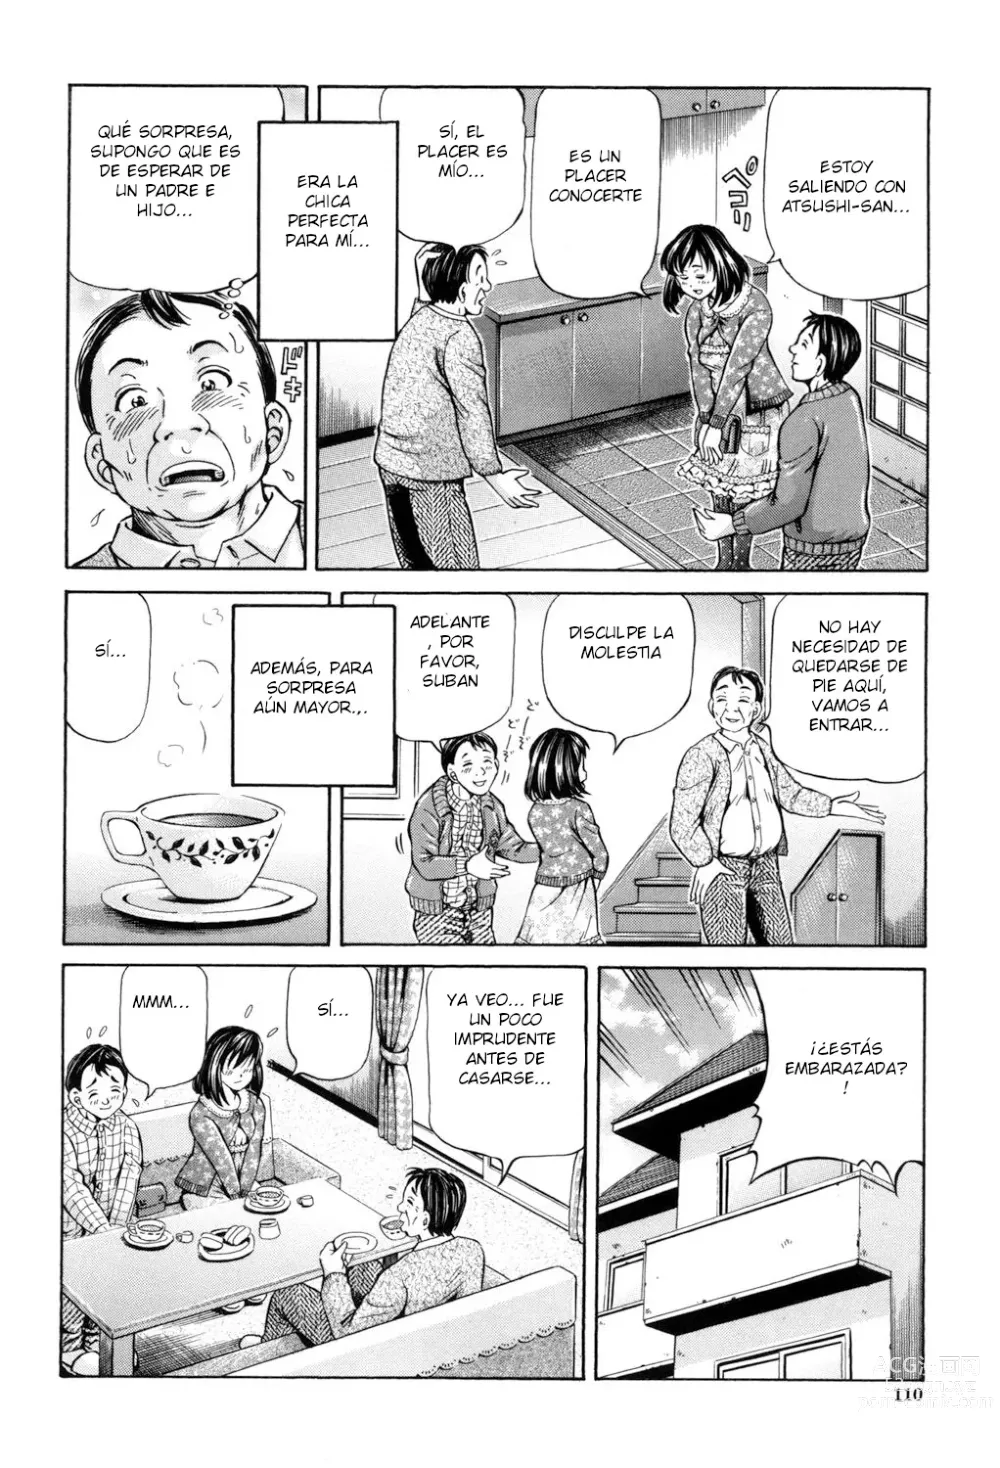 Page 2 of manga Omokage ＝ ones figure